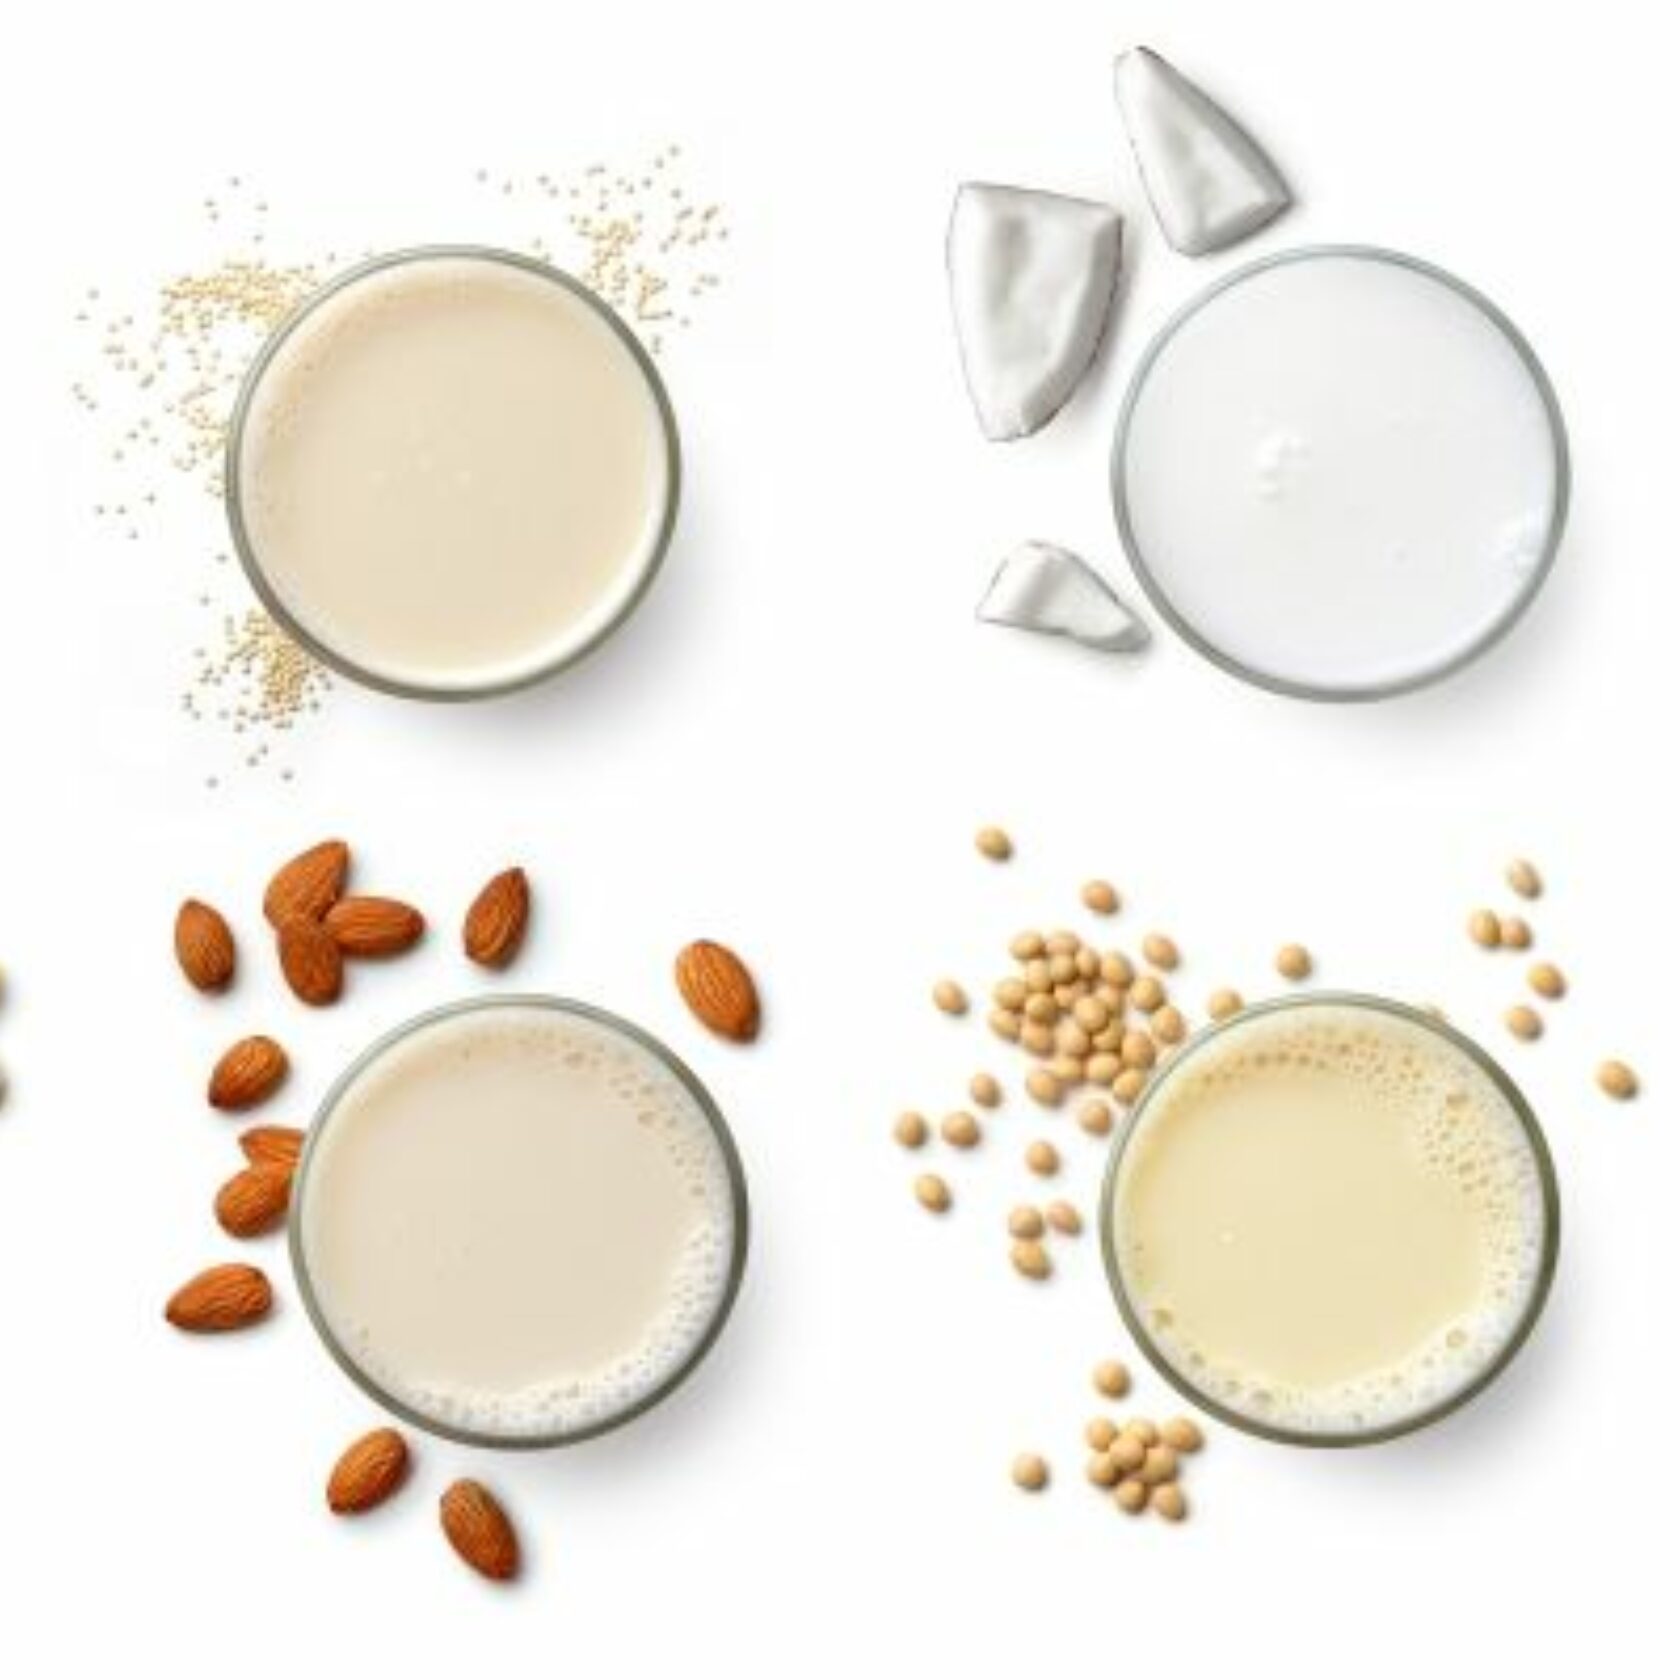 Milchersatzprodukte aus pflanzlichen Quellen im Vergleich